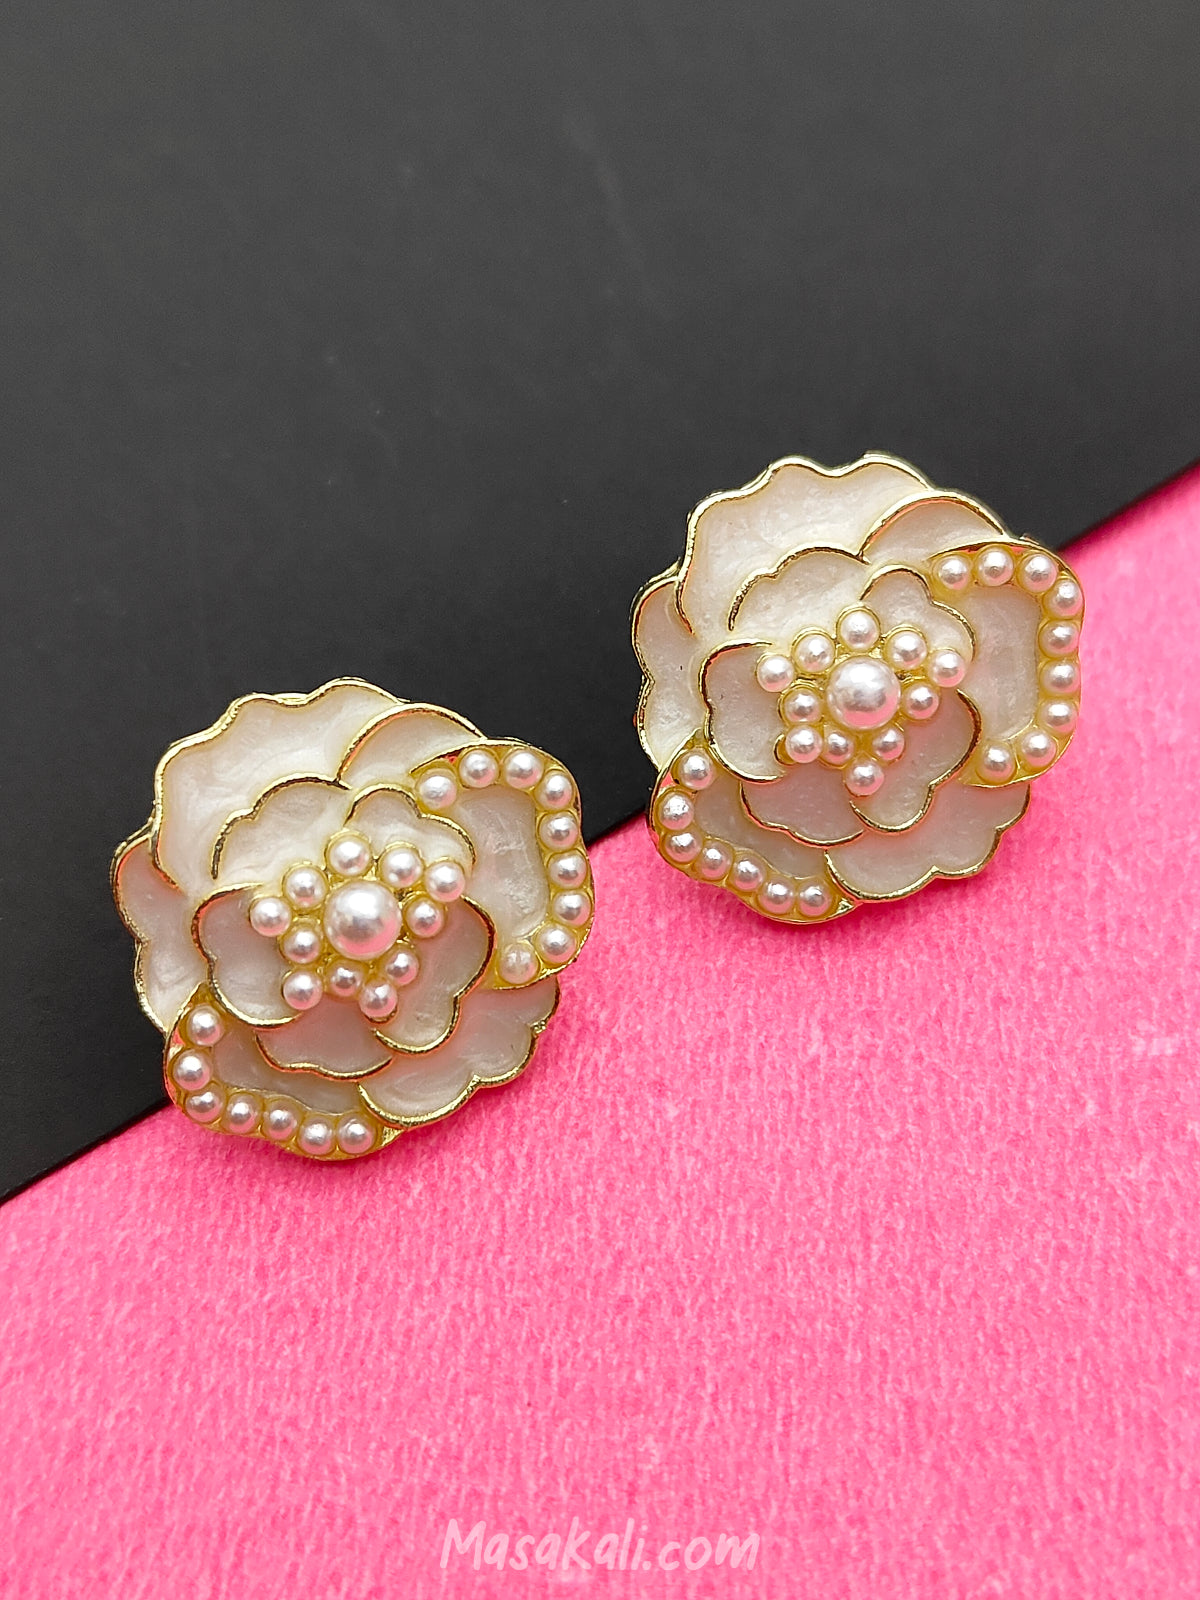 Masakali Camellia Flower Earrings Pearl Cream White Studs Korean Golden Enameled Ear Jewelry For Women